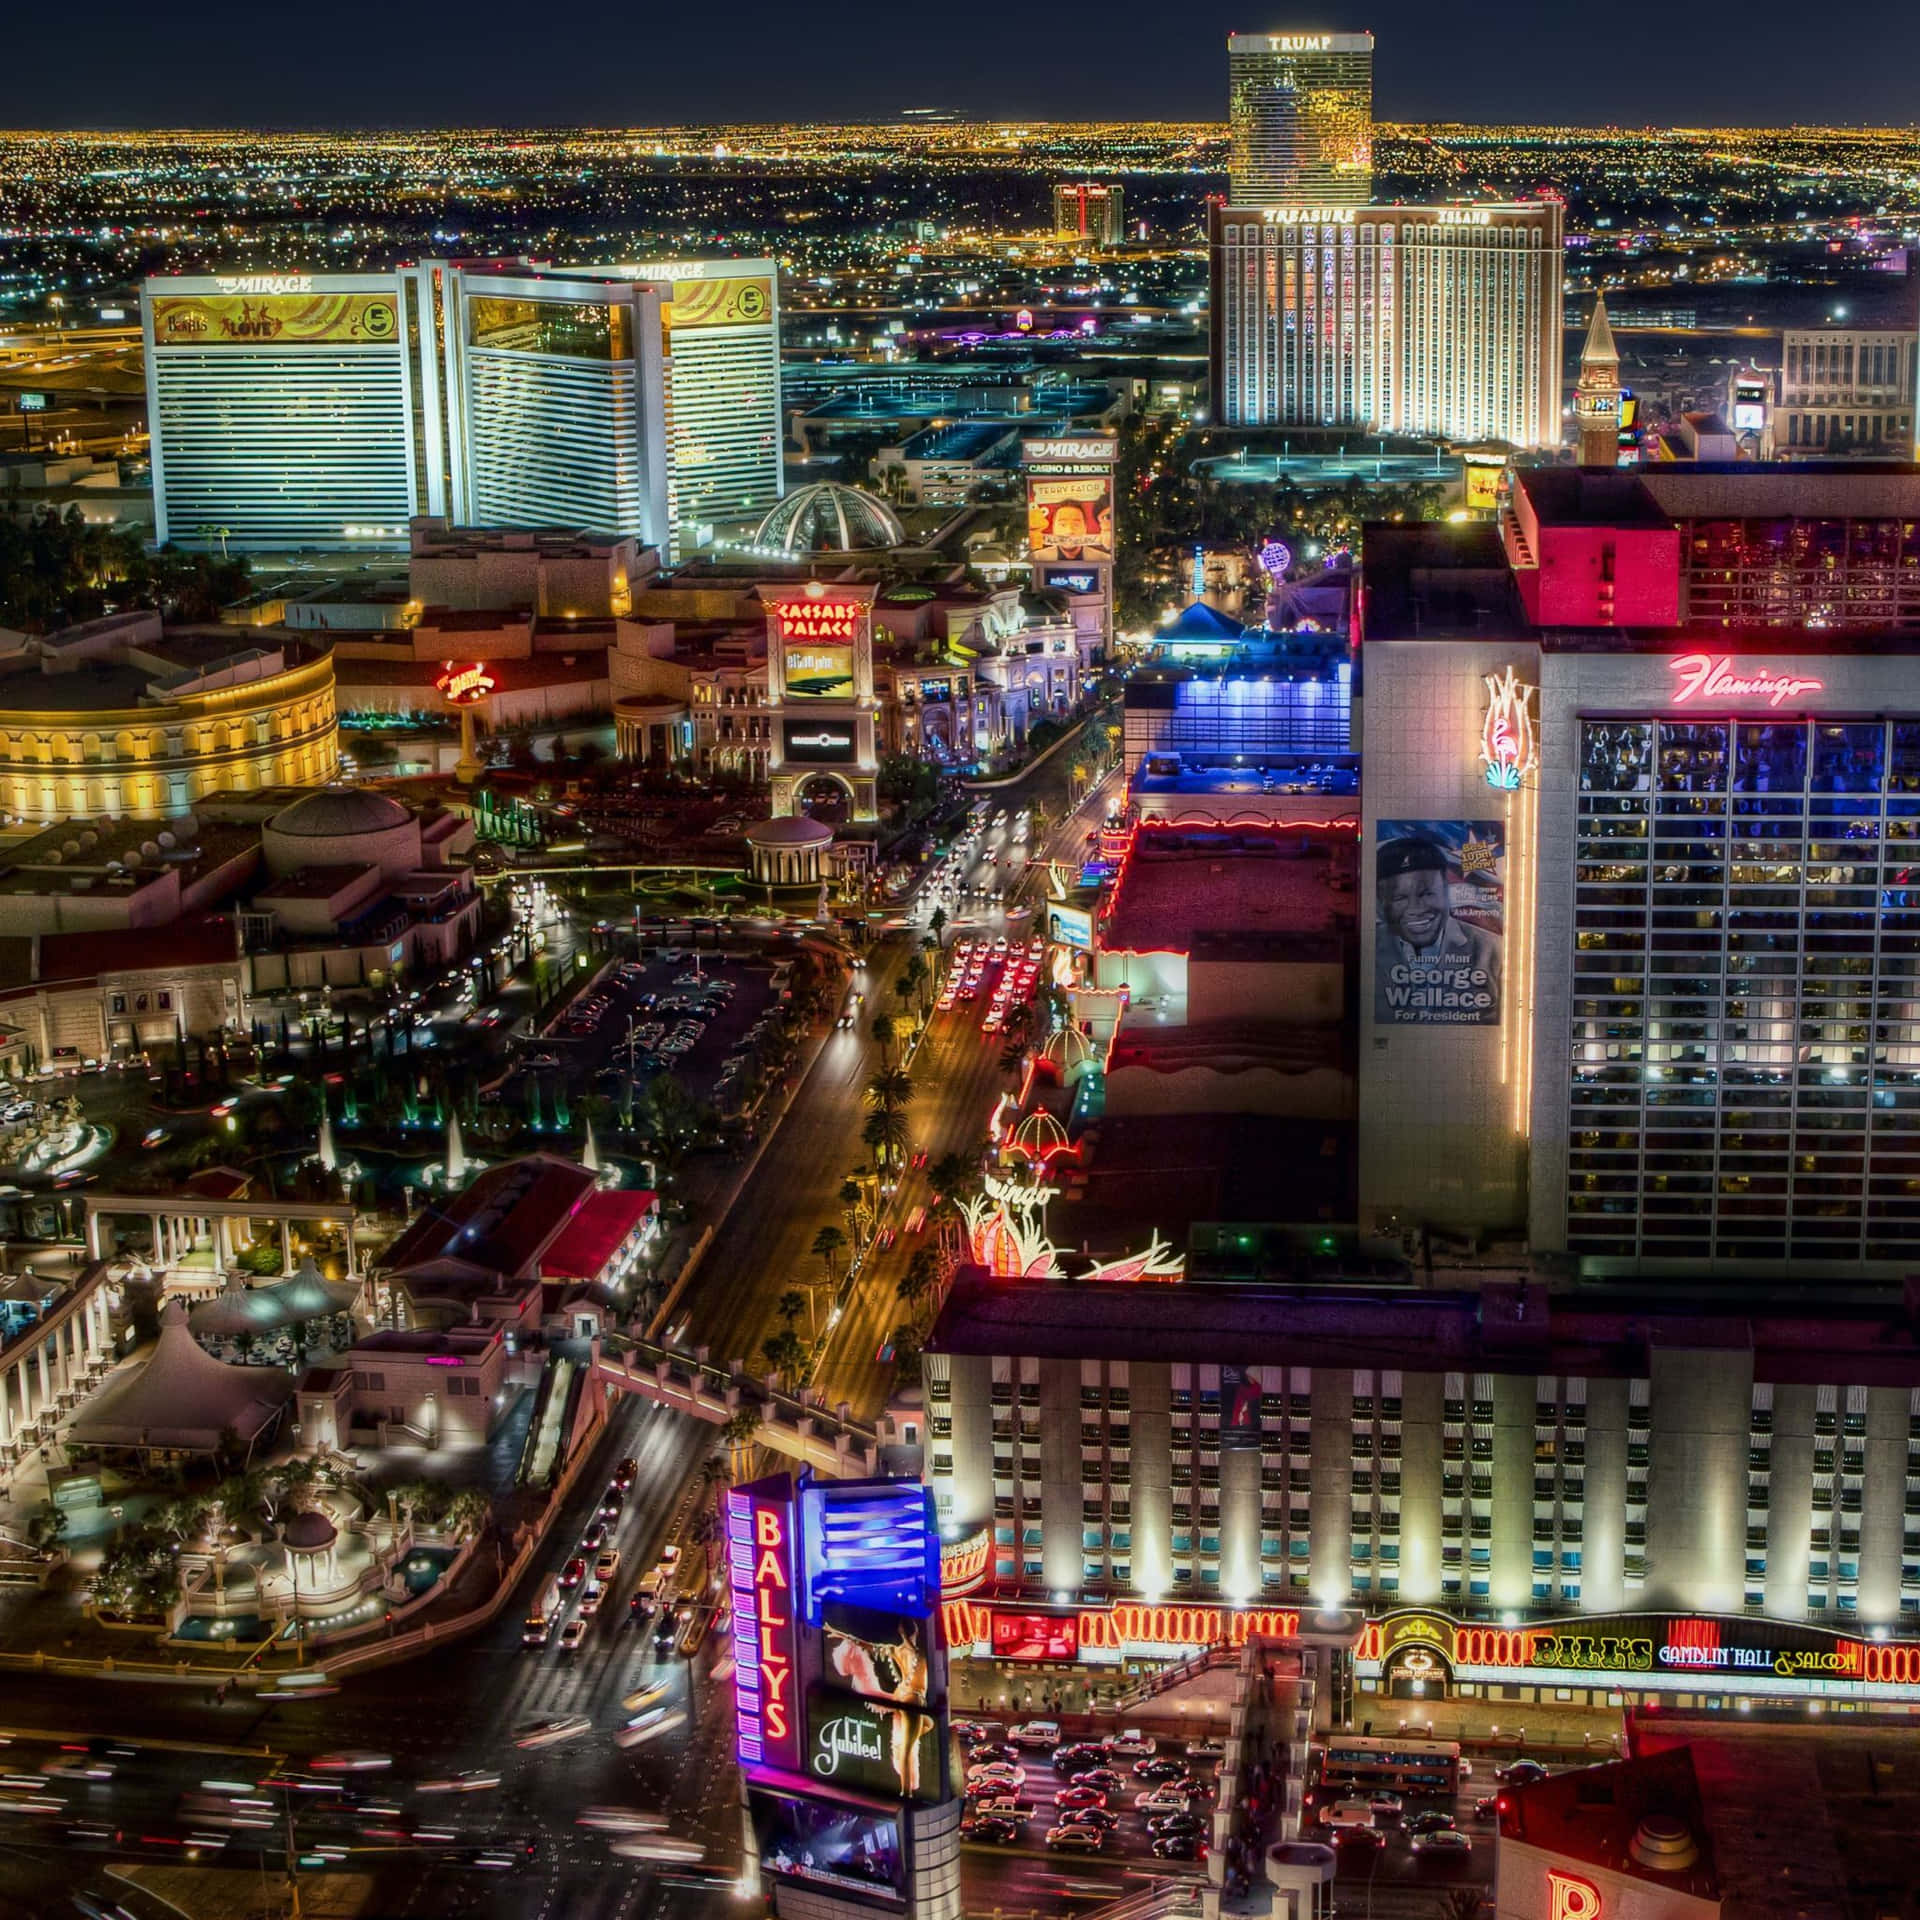 Dieskyline Von Las Vegas, Nevada Mit Den Blendenden Lichtern Dieser Unterhaltungsstadt.